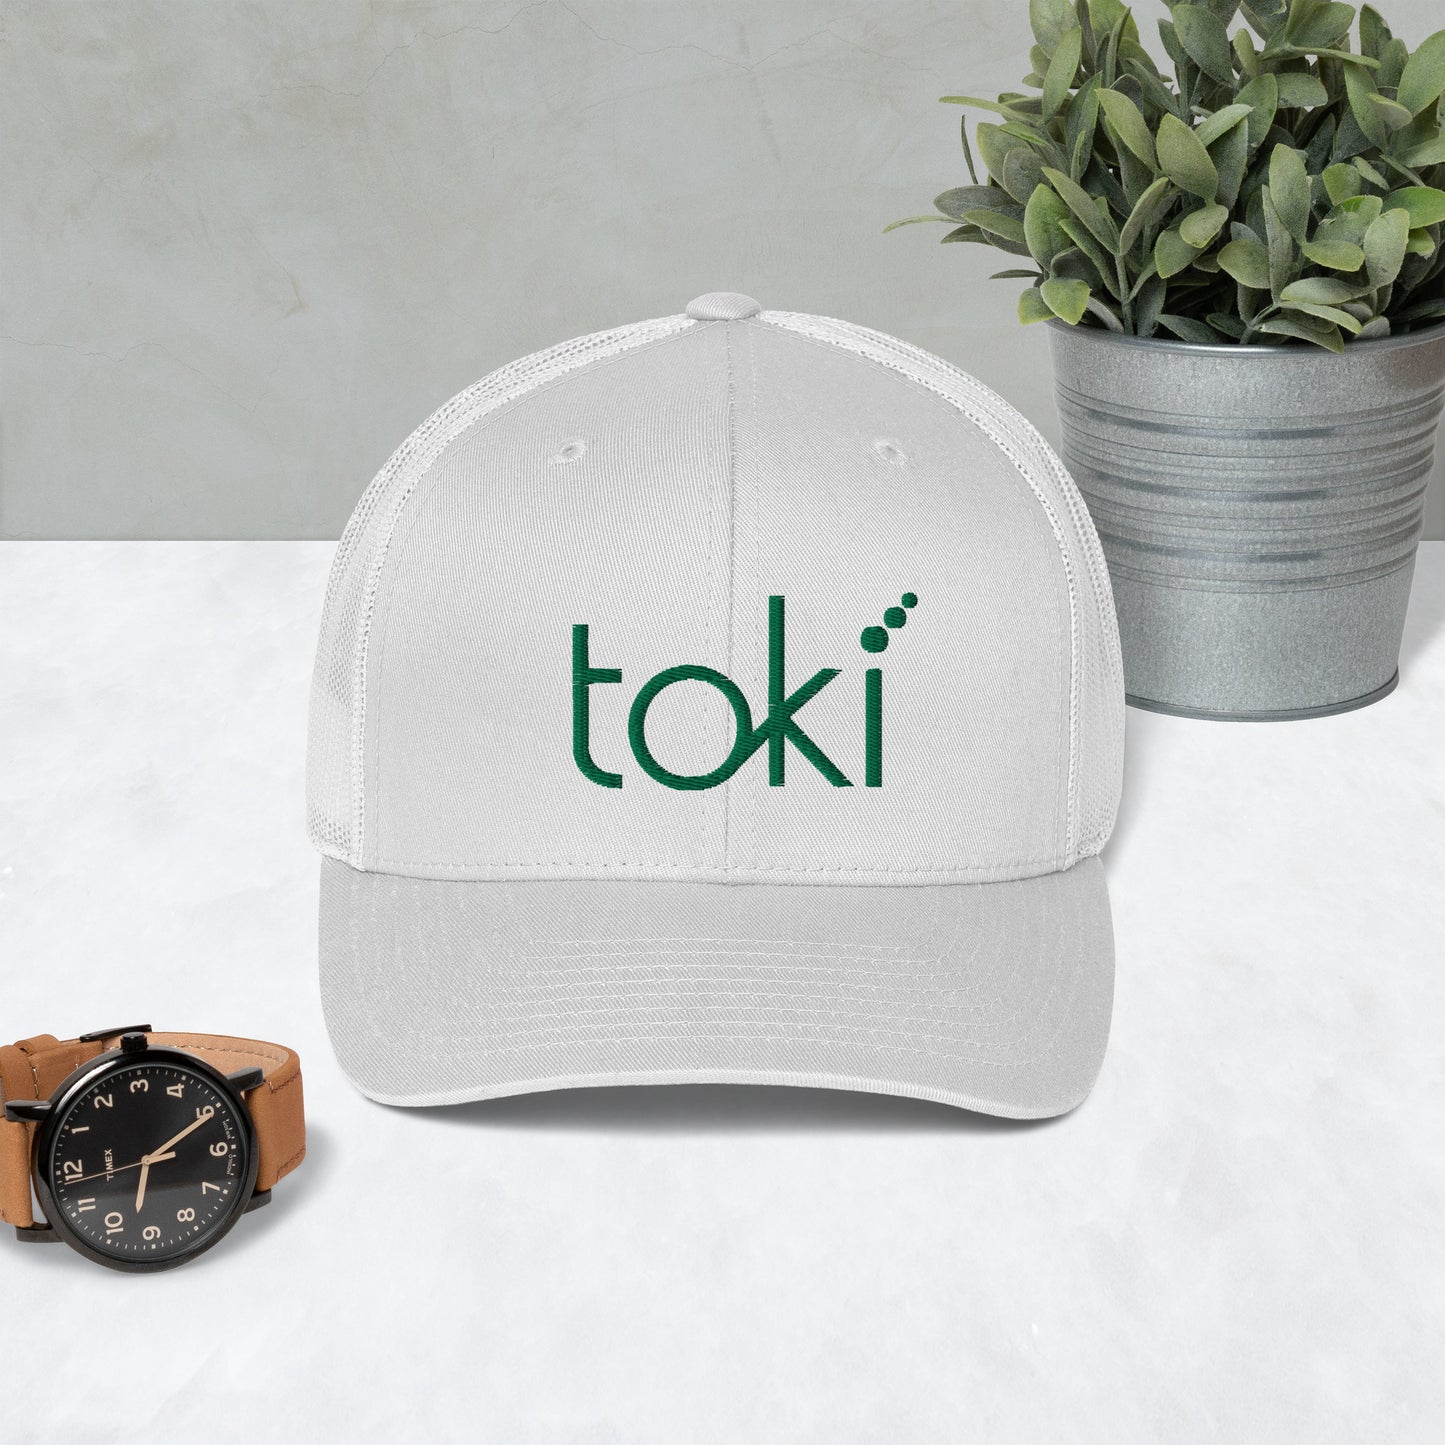 Toki Trucker Cap